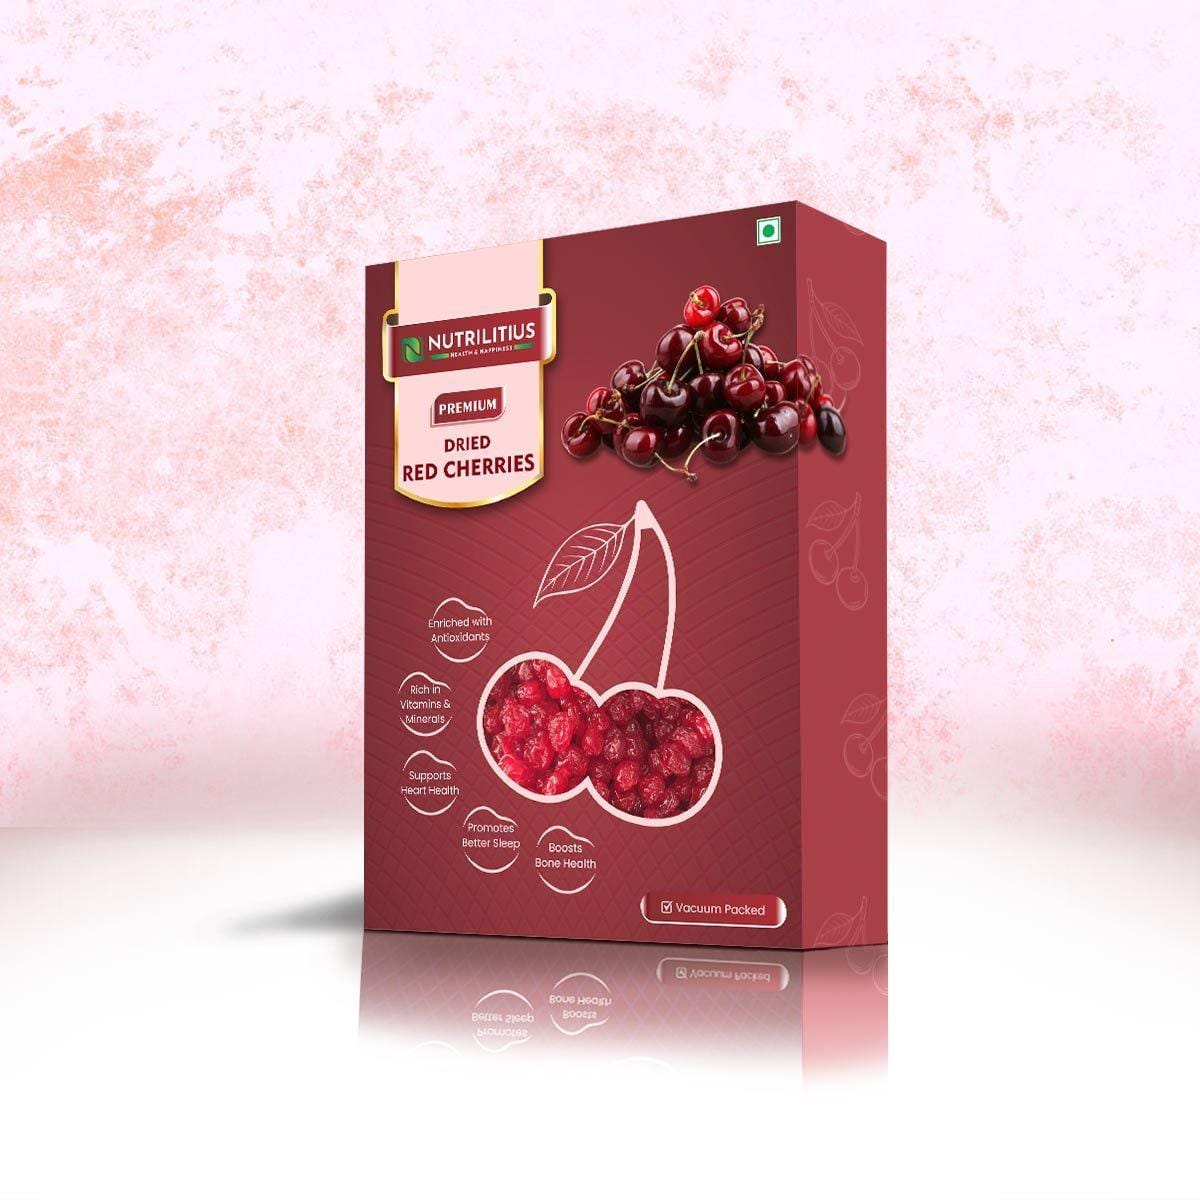 Nutrilitius Dried Red Cherries - Nutrilitius